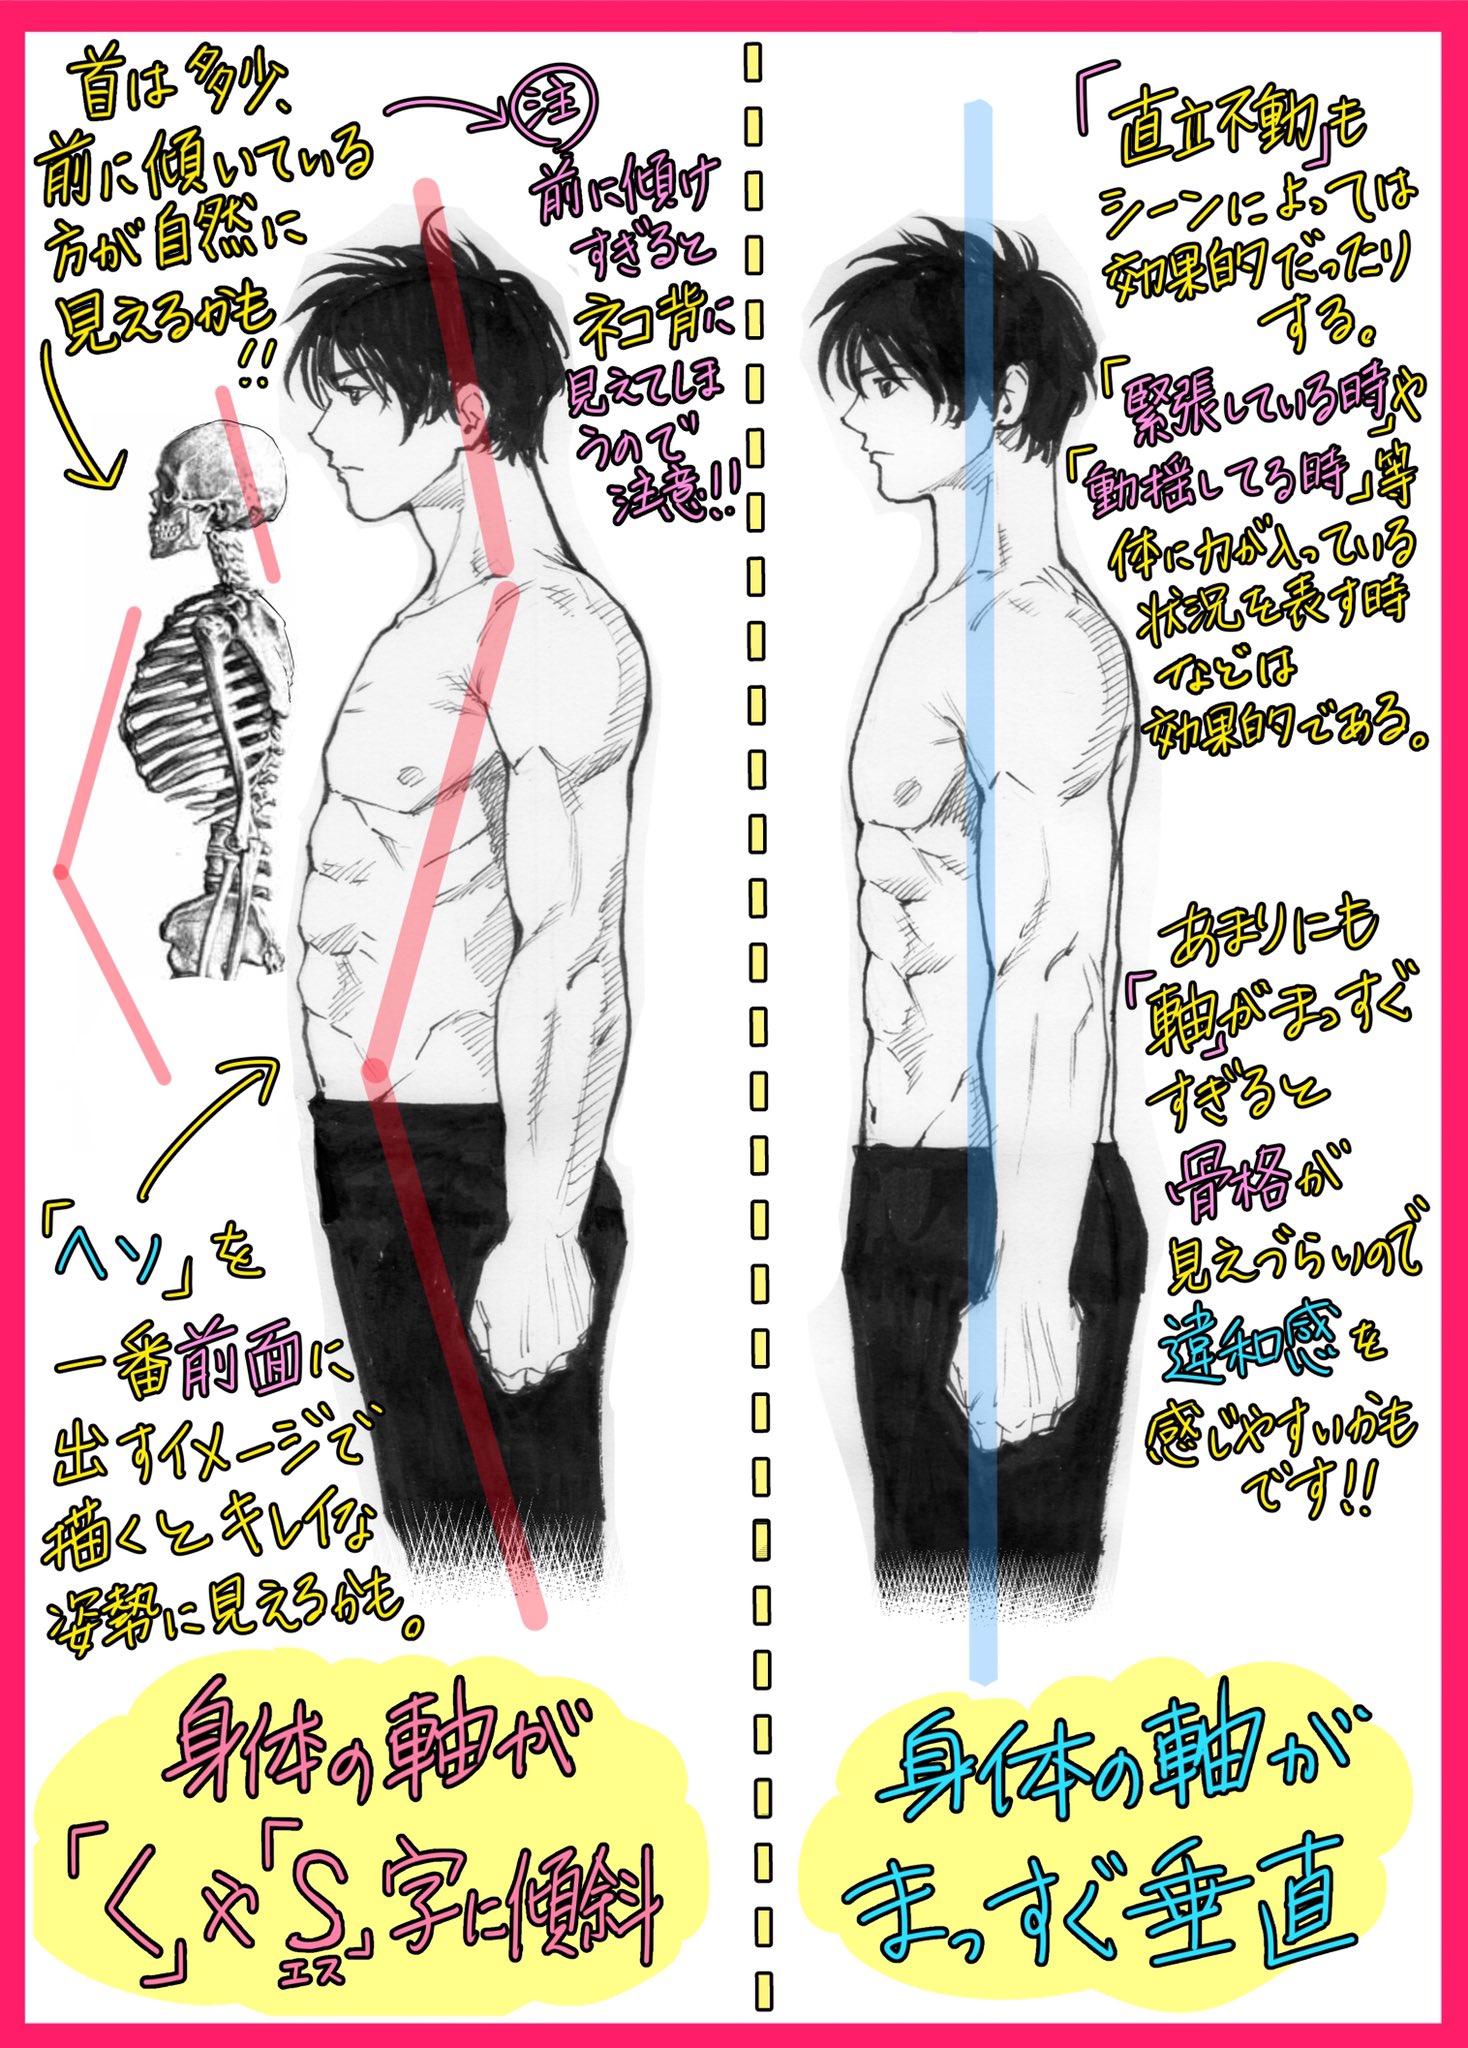 吉村拓也 イラスト講座 在 Twitter 上 男性の筋肉の描き方 フカン視点や横アングルが上達する 3ページ講座 です T Co Smaccq8xbt Twitter